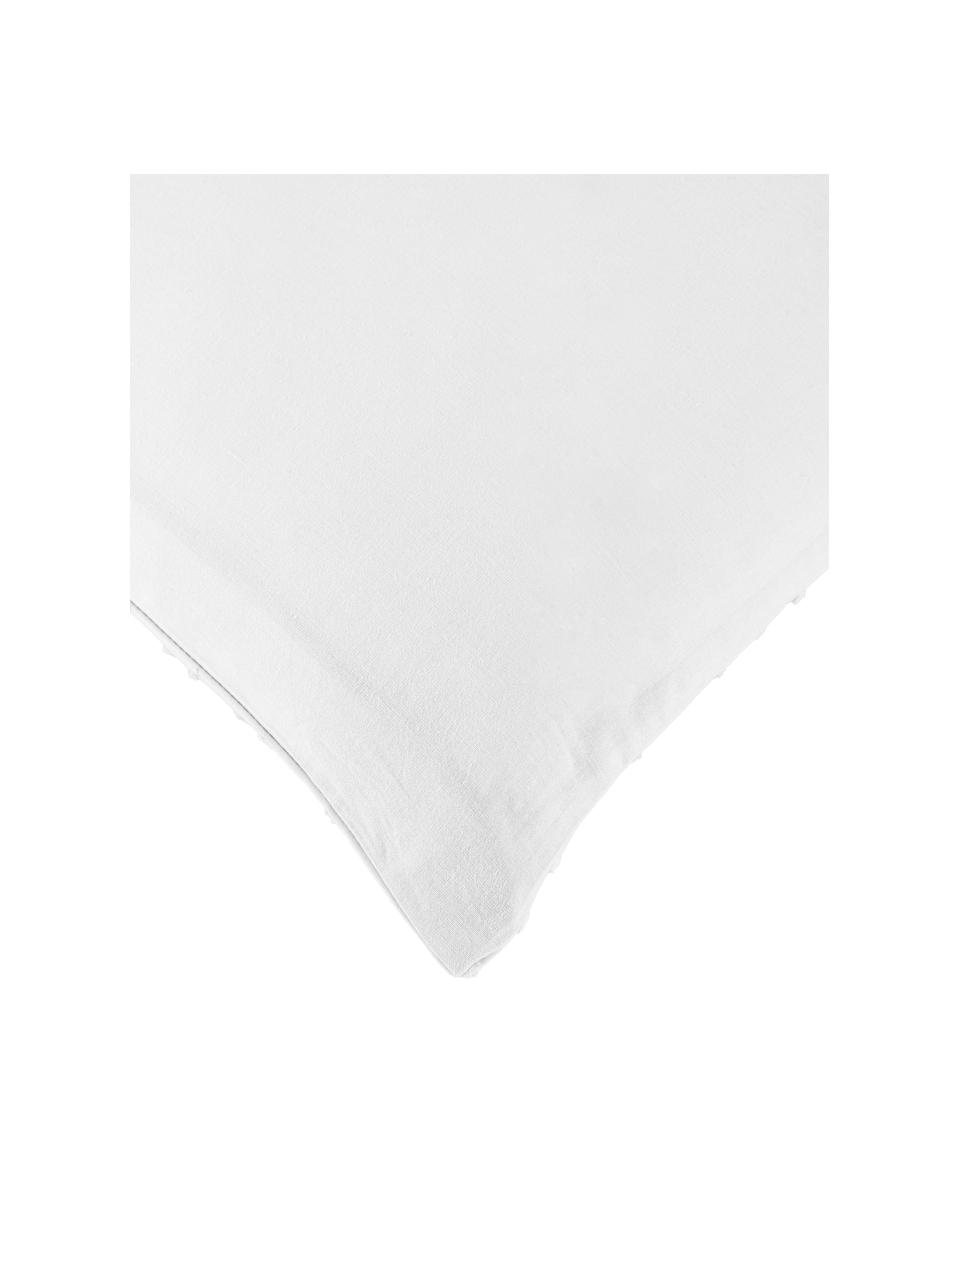 Pościel z bawełny plumeti Aloide, Biały, 200 x 200 cm + 2 poduszki 80 x 80 cm